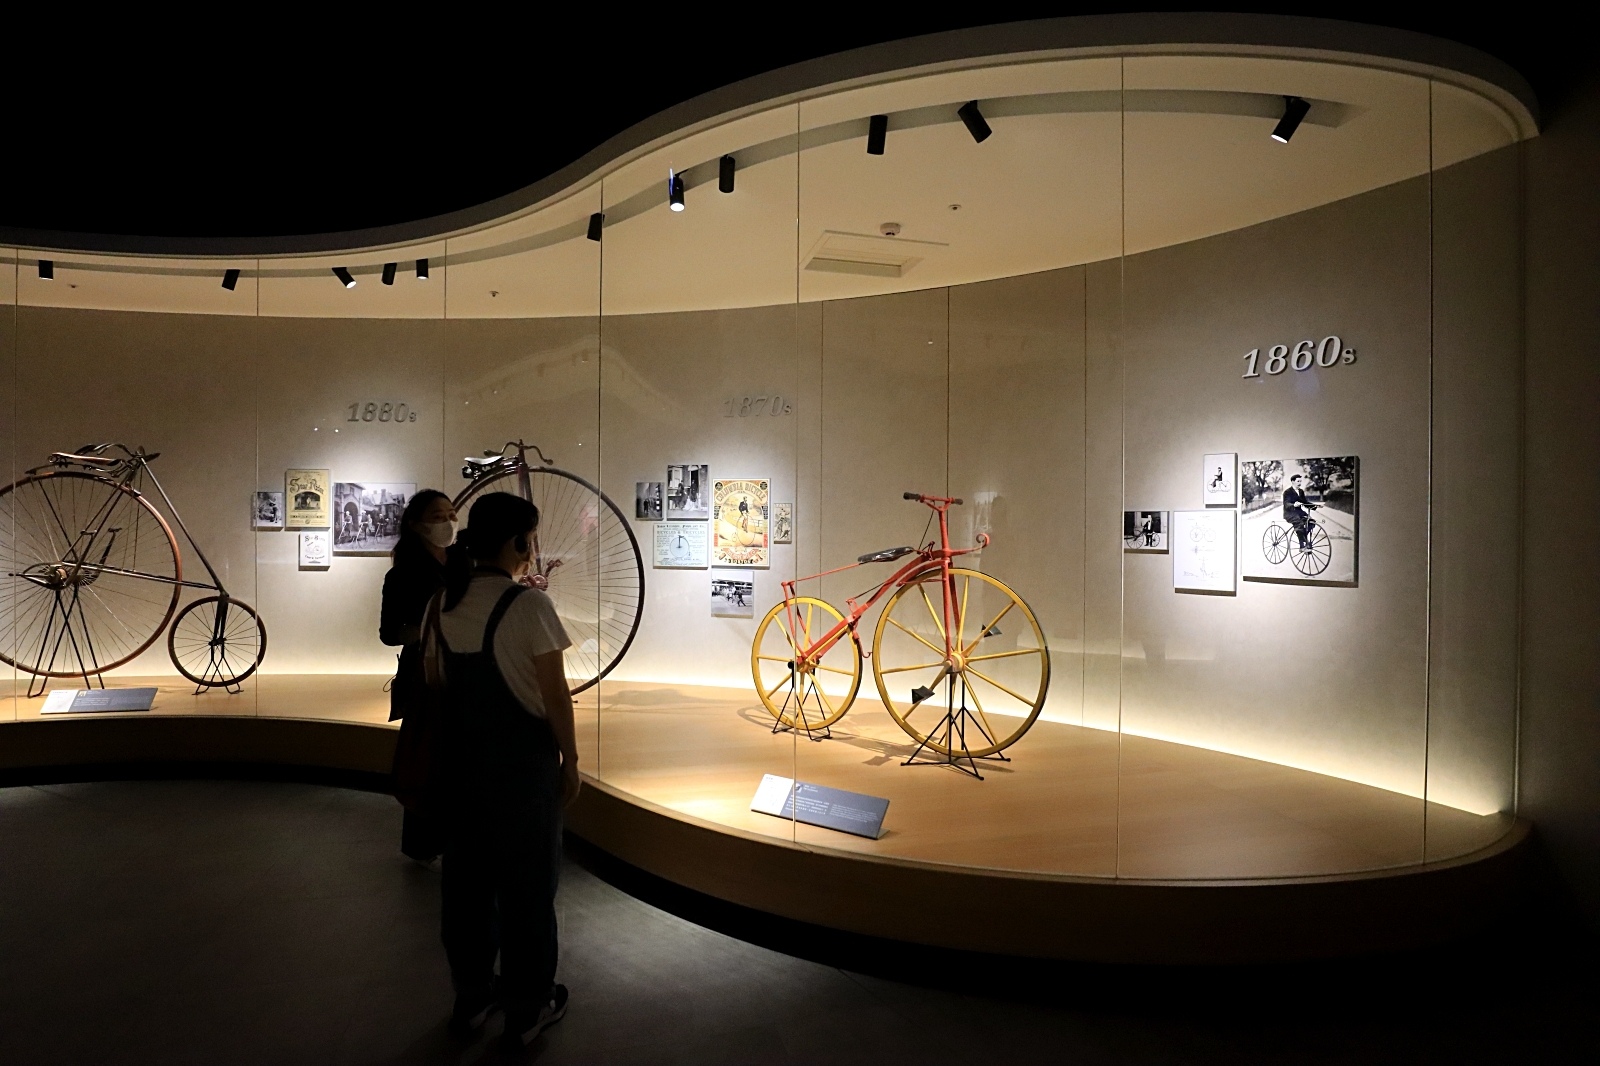 自行車文化探索館介紹自行車的發展歷史